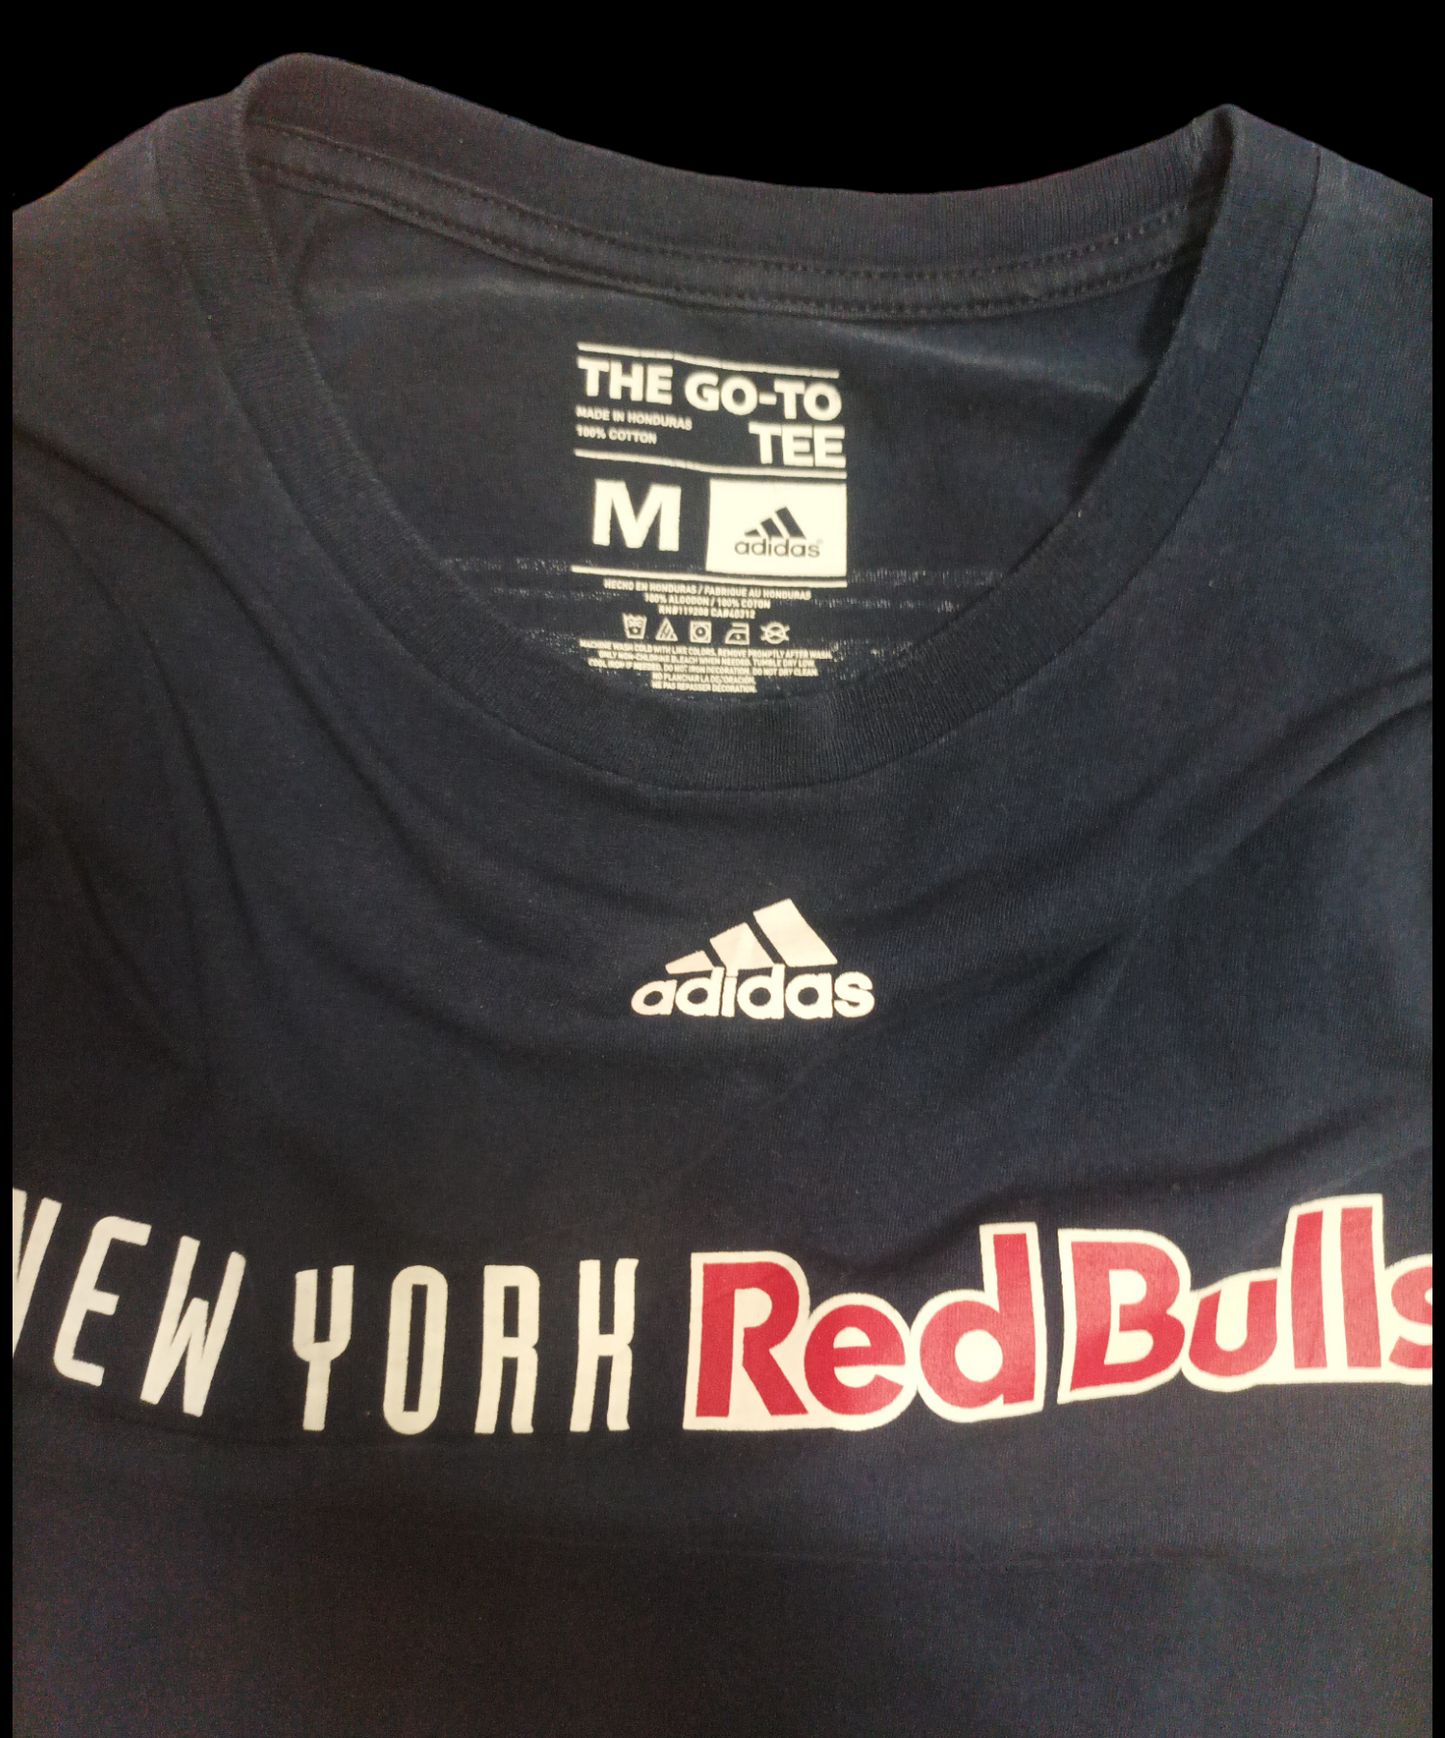 T-Shirt Adidas New York RedBulls